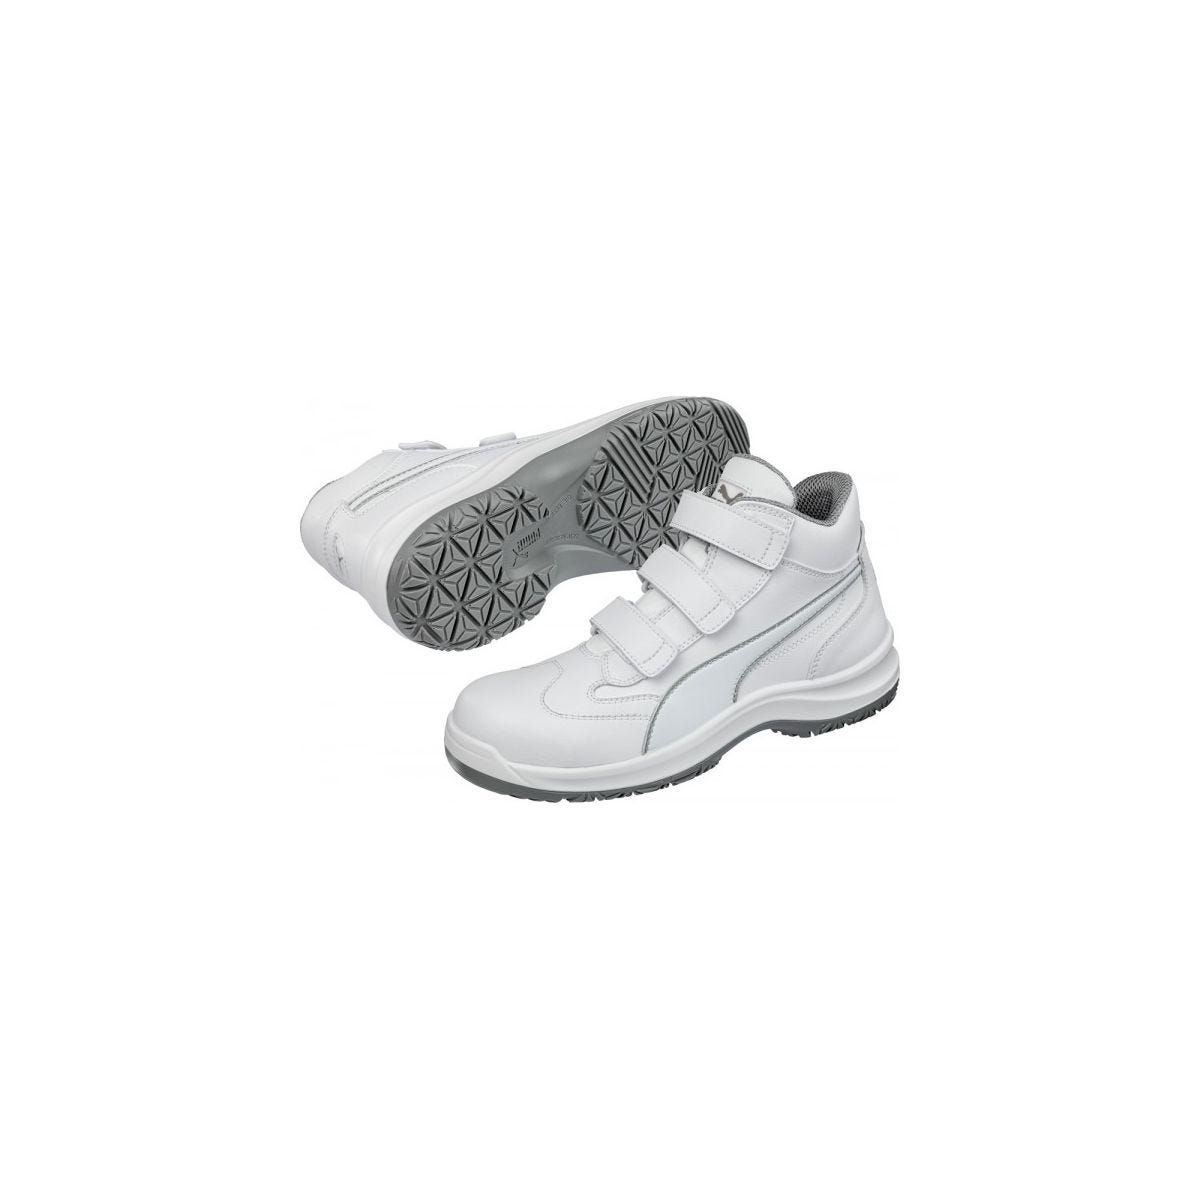 Chaussures de sécurité Absolute Mid S2 Blanc - Puma - Taille 43 2